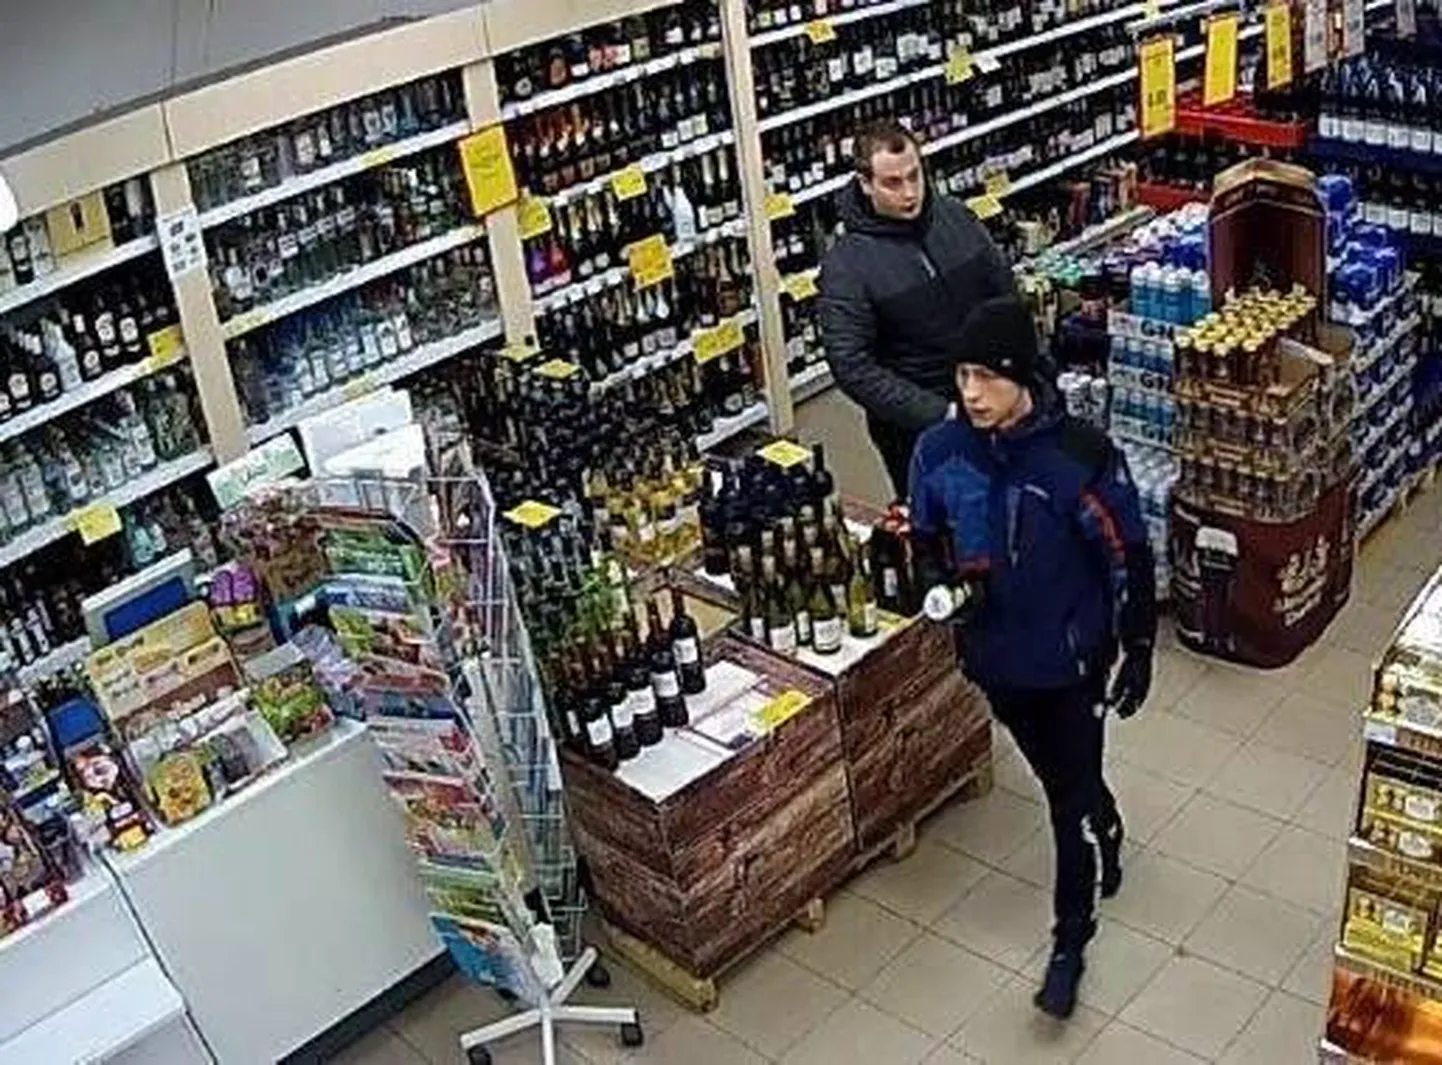 Politsei palub abi pildil olevate noormeeste tuvastamisel, kes kahjustasid Pärnus Riia maanteel toiduainete kaupluses müüdud kaupasid ja tarvitasid toiduaineid, mille eest kassas ei tasunud.